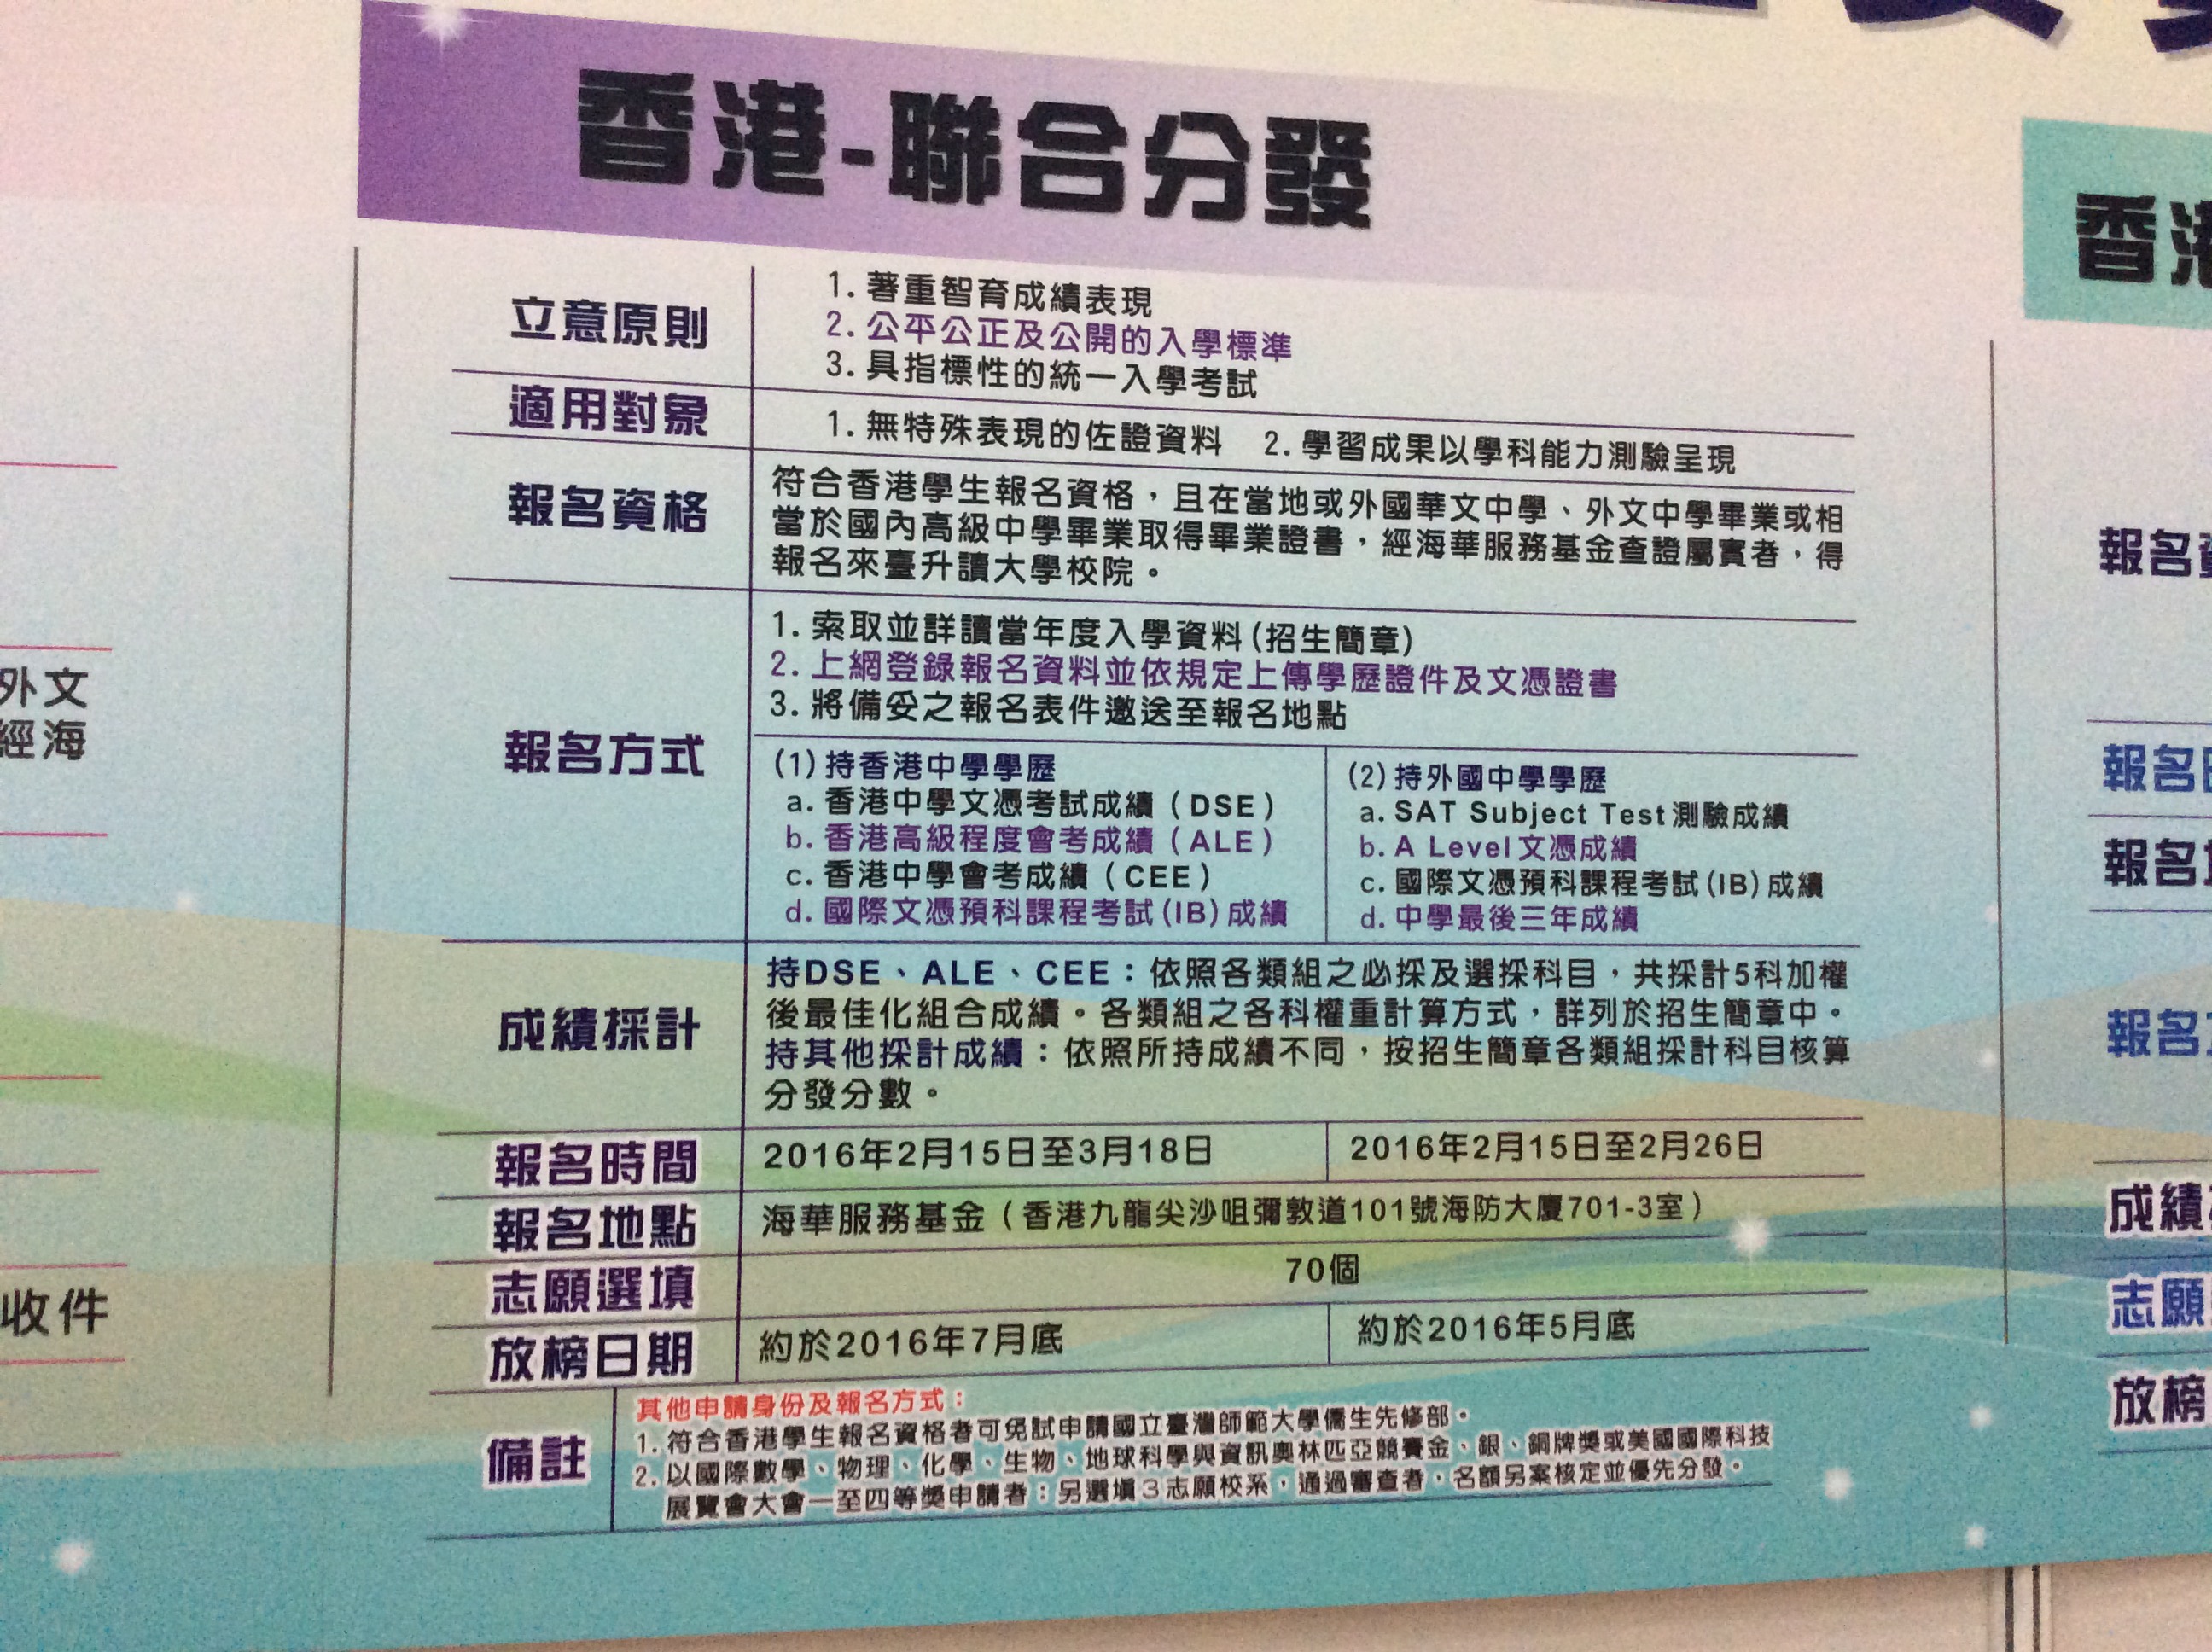 本校大學部均採聯合分發方式招收香港僑生